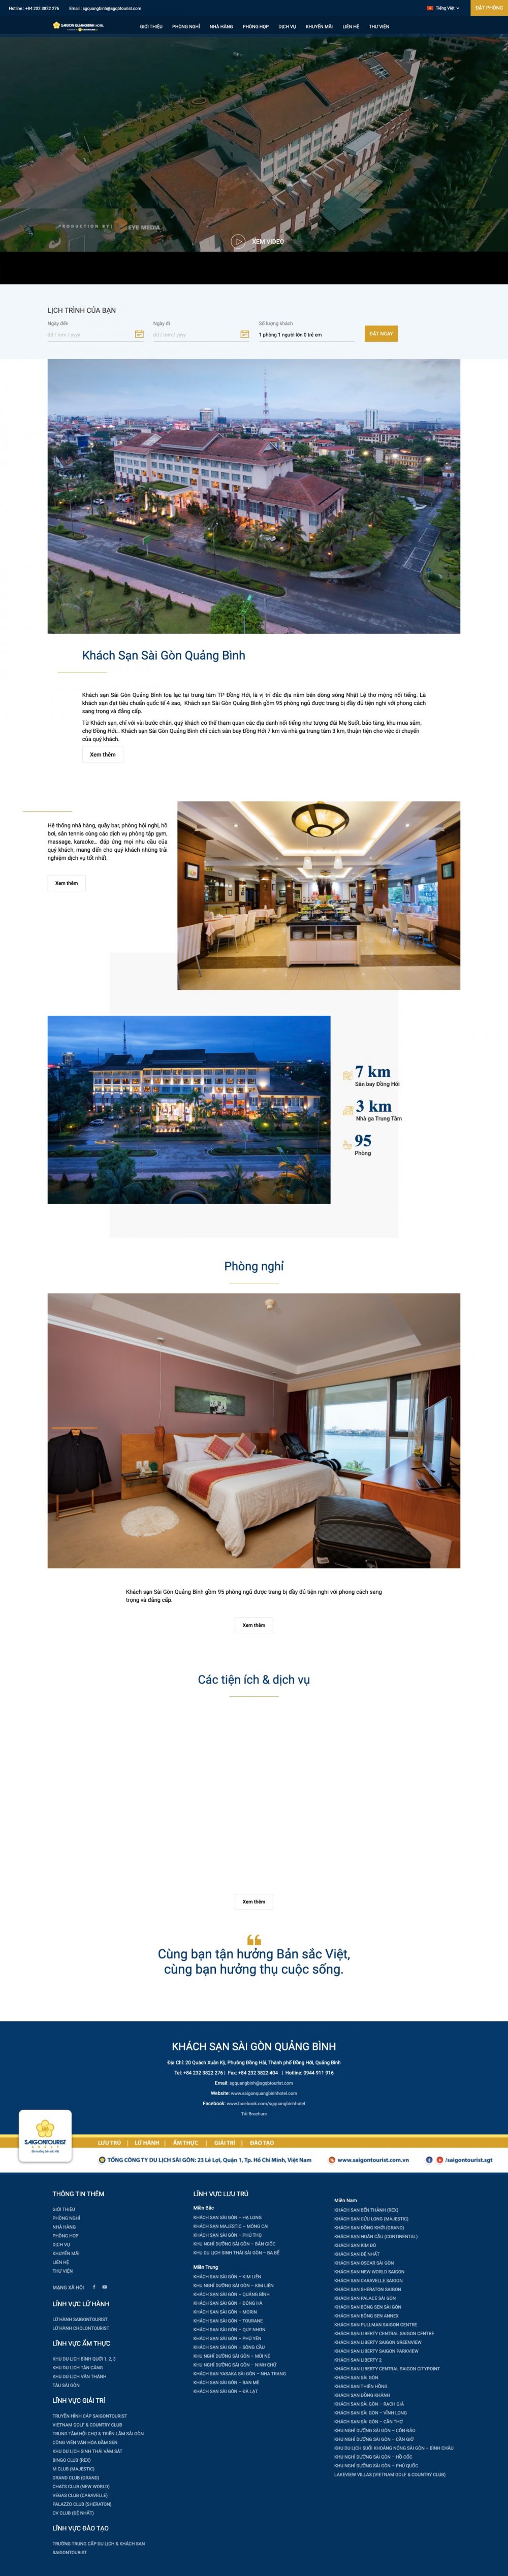 Khách sạn Sài Gòn – Quảng Bình